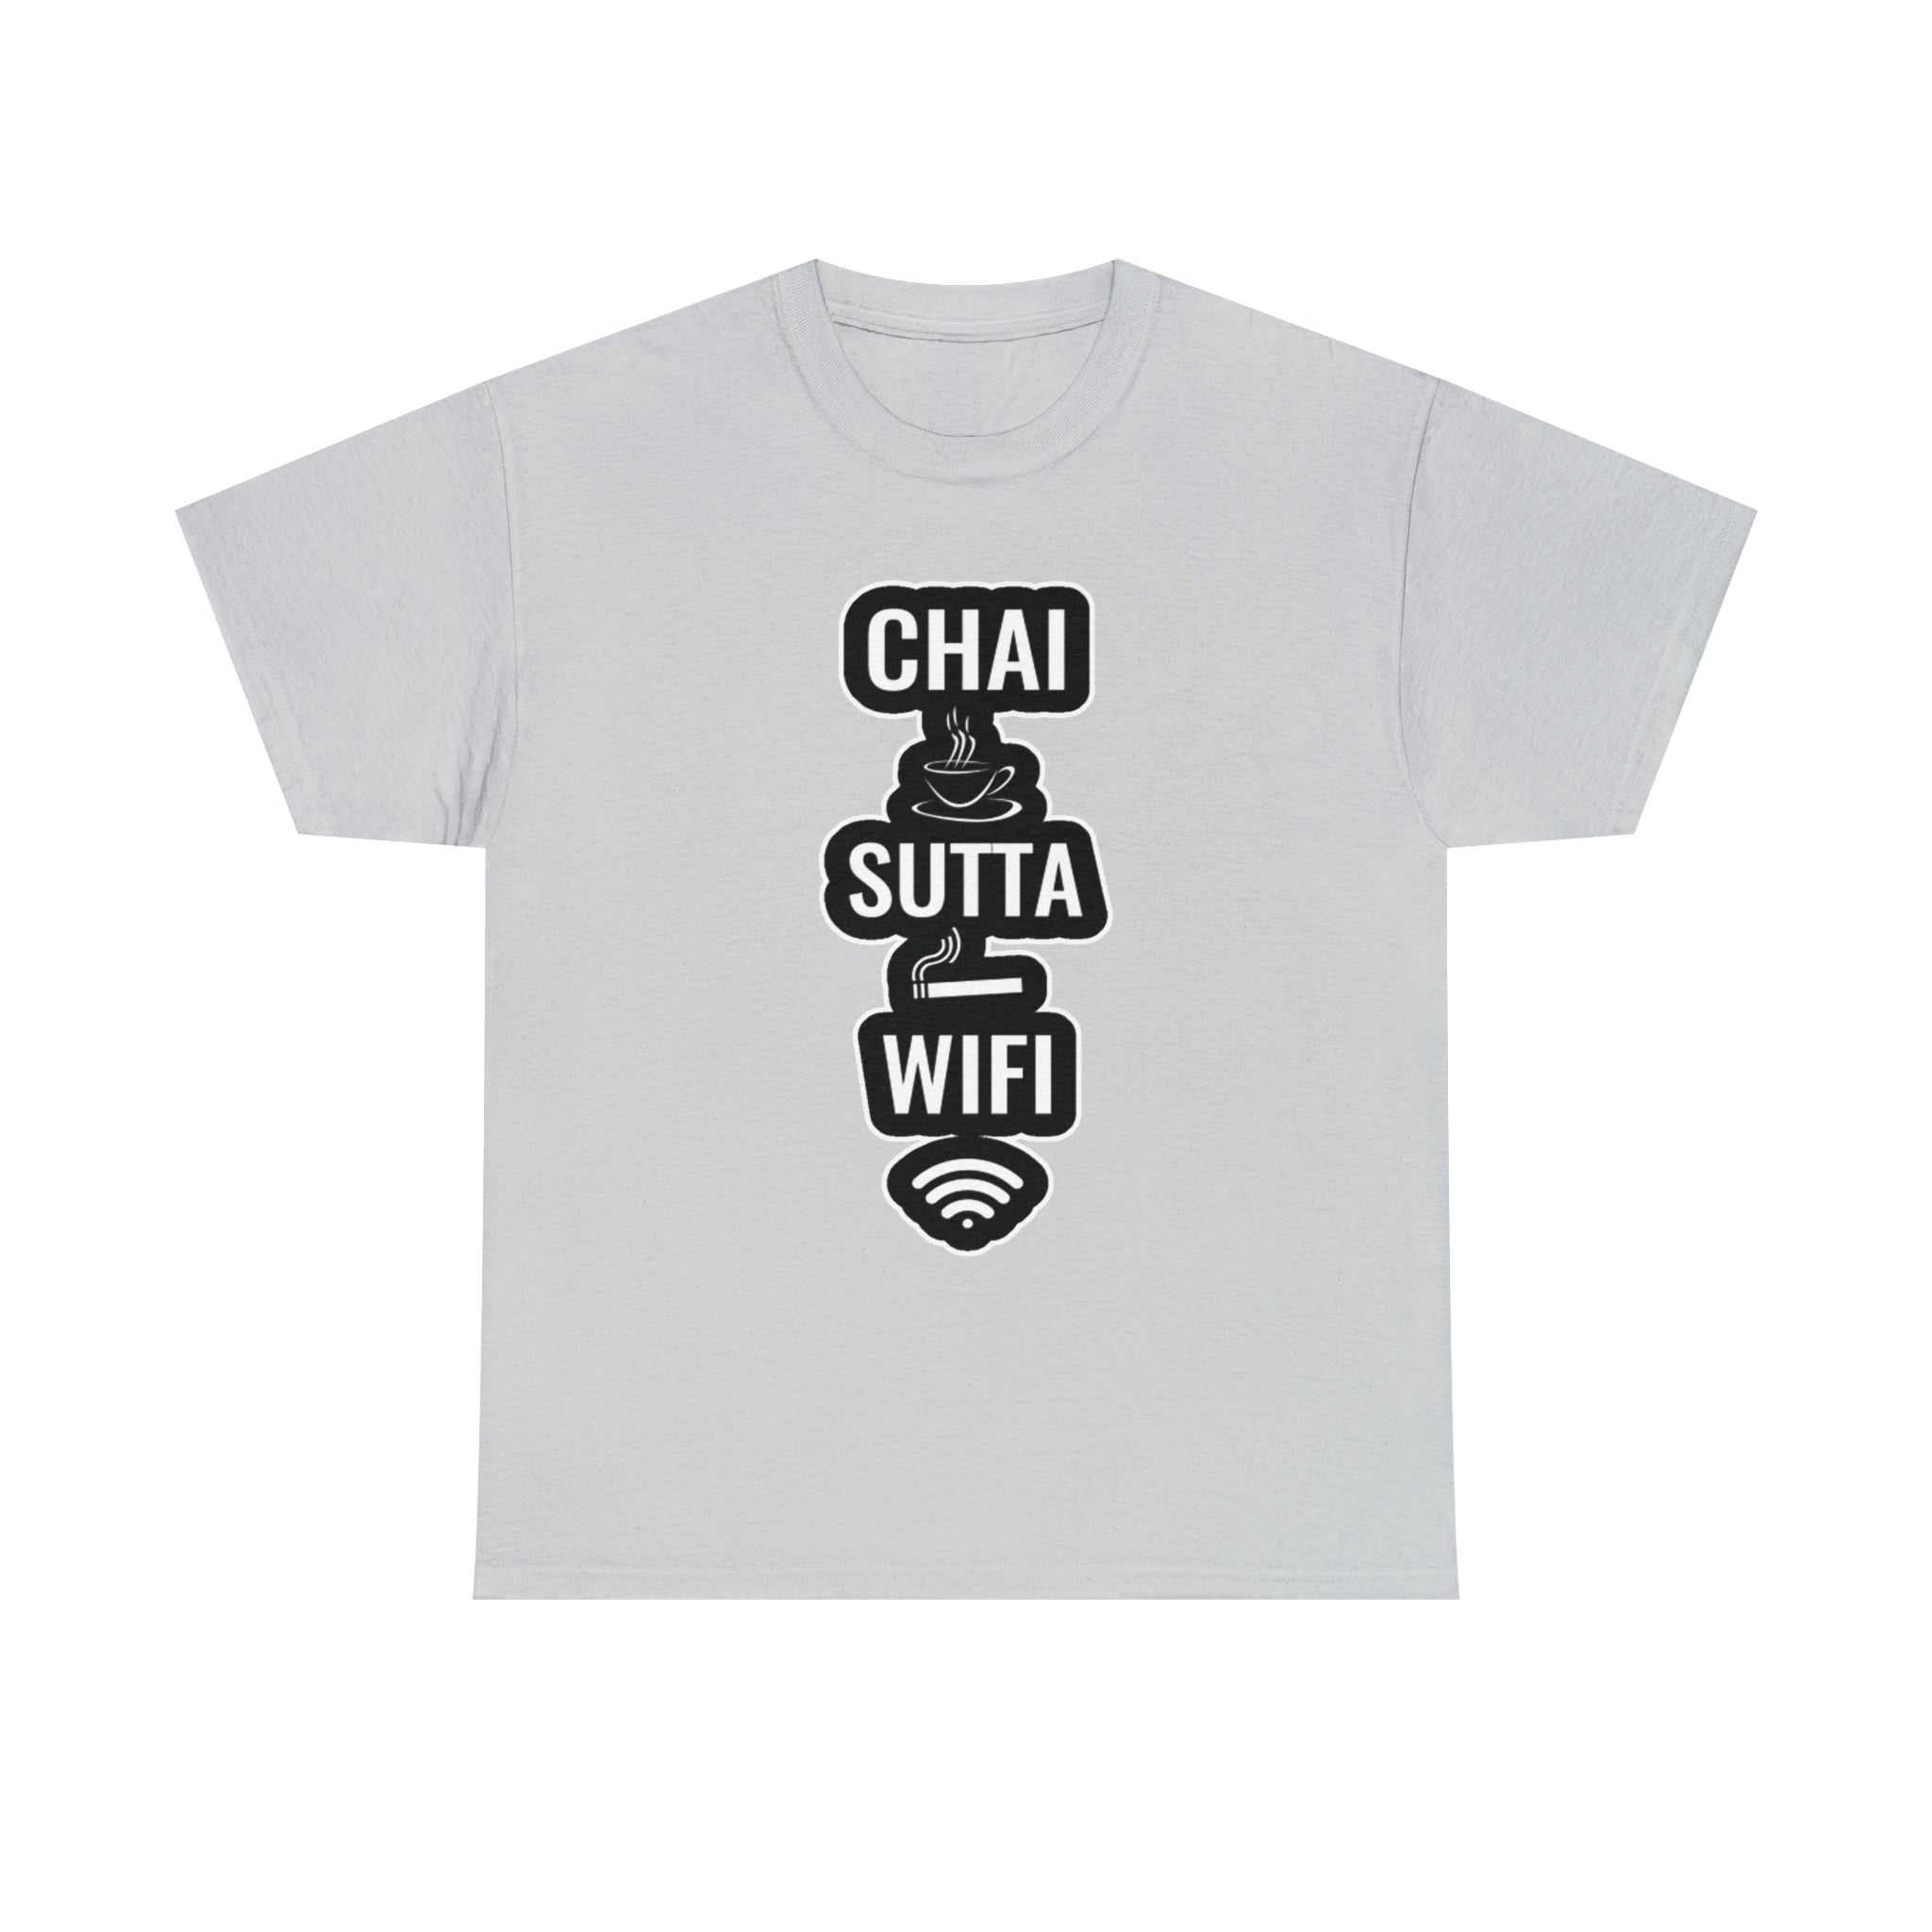 Chai Sutta WiFi T-Shirt Design by C&C